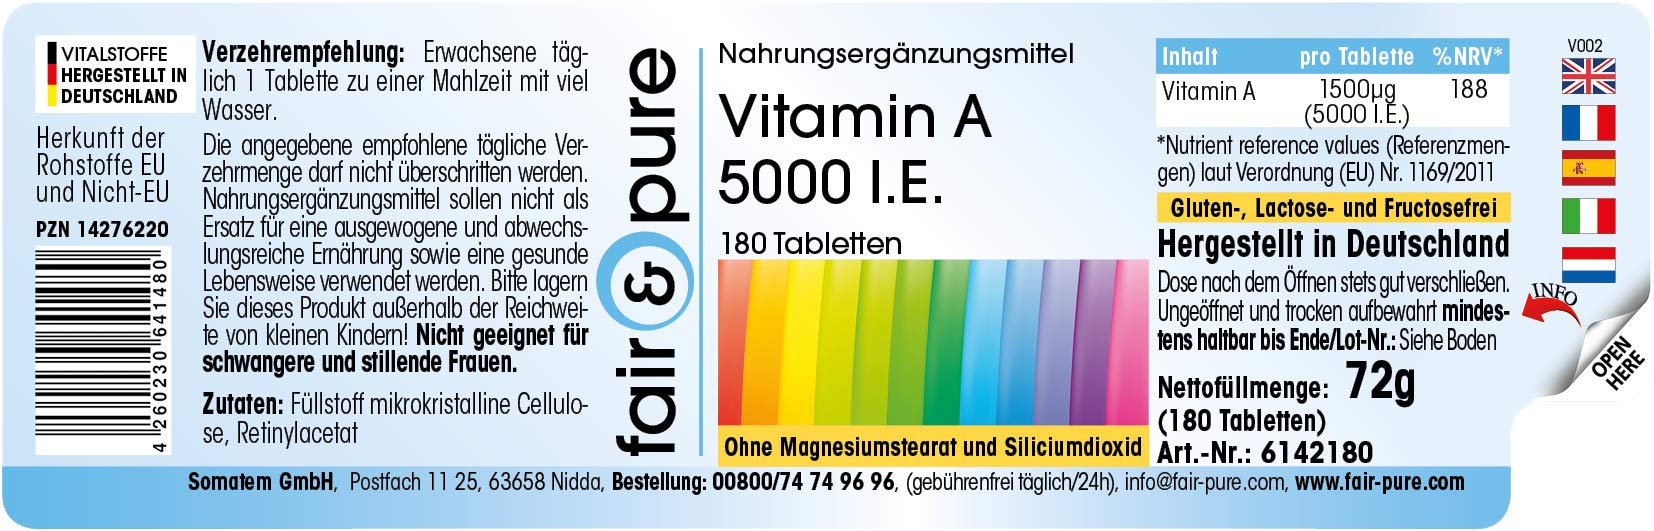 Witamina A 5000 I.E. (1500µg) - octan retinylu - wegańska - bez stearynianu magnezu - 180 tabletek